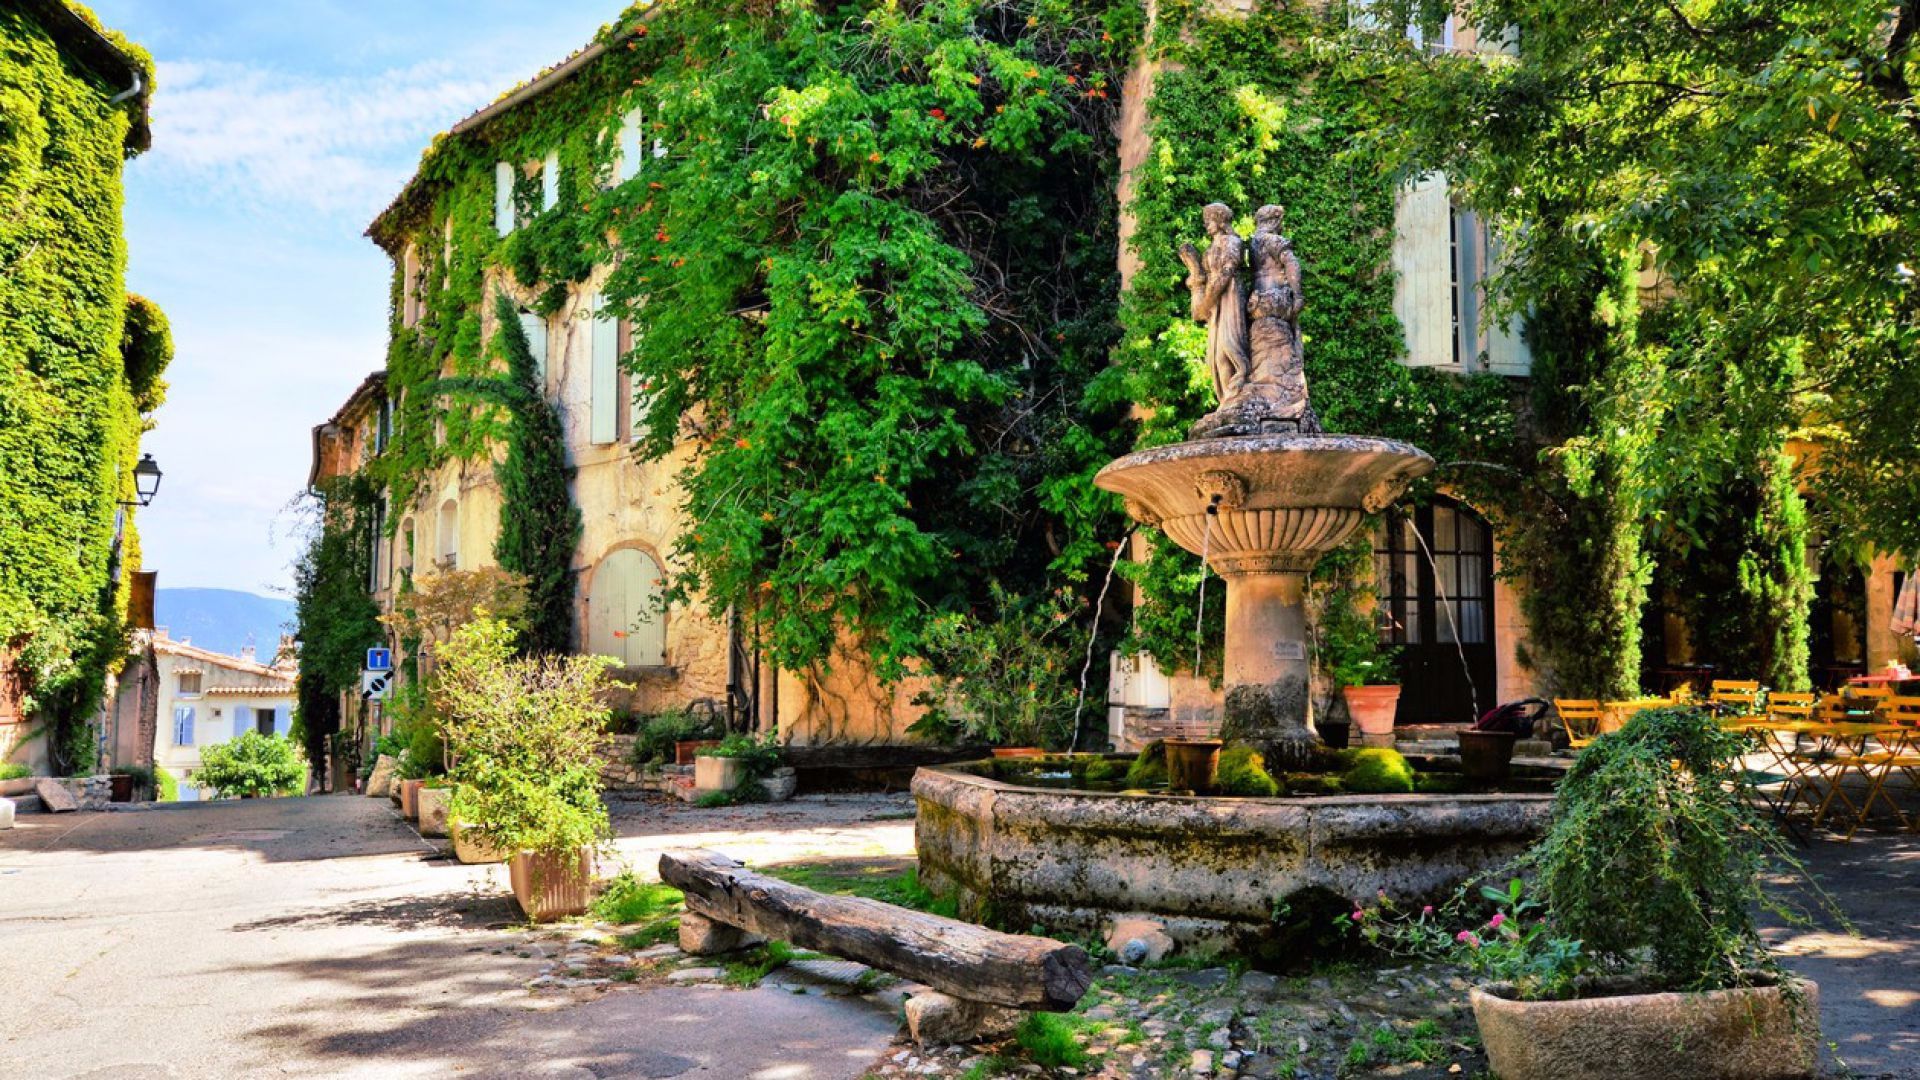 Achat vente propriétés charme villas à Marseille et Salon-de-Provence